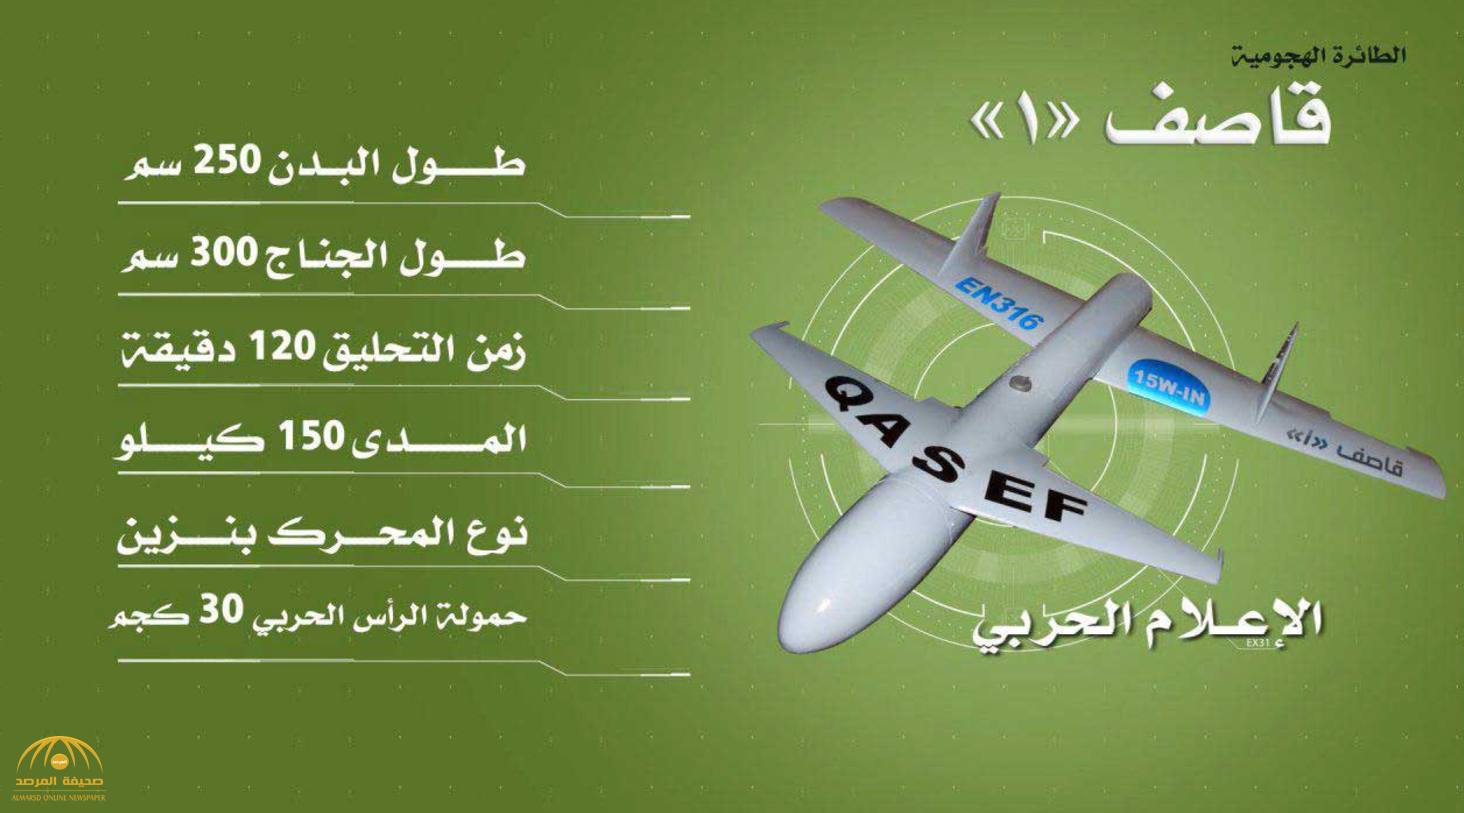 كشف تفاصيل سرية عن مصدر صناعة الطائرات بدون طيار التي بحوزة الحوثيين في  اليمن • صحيفة المرصد